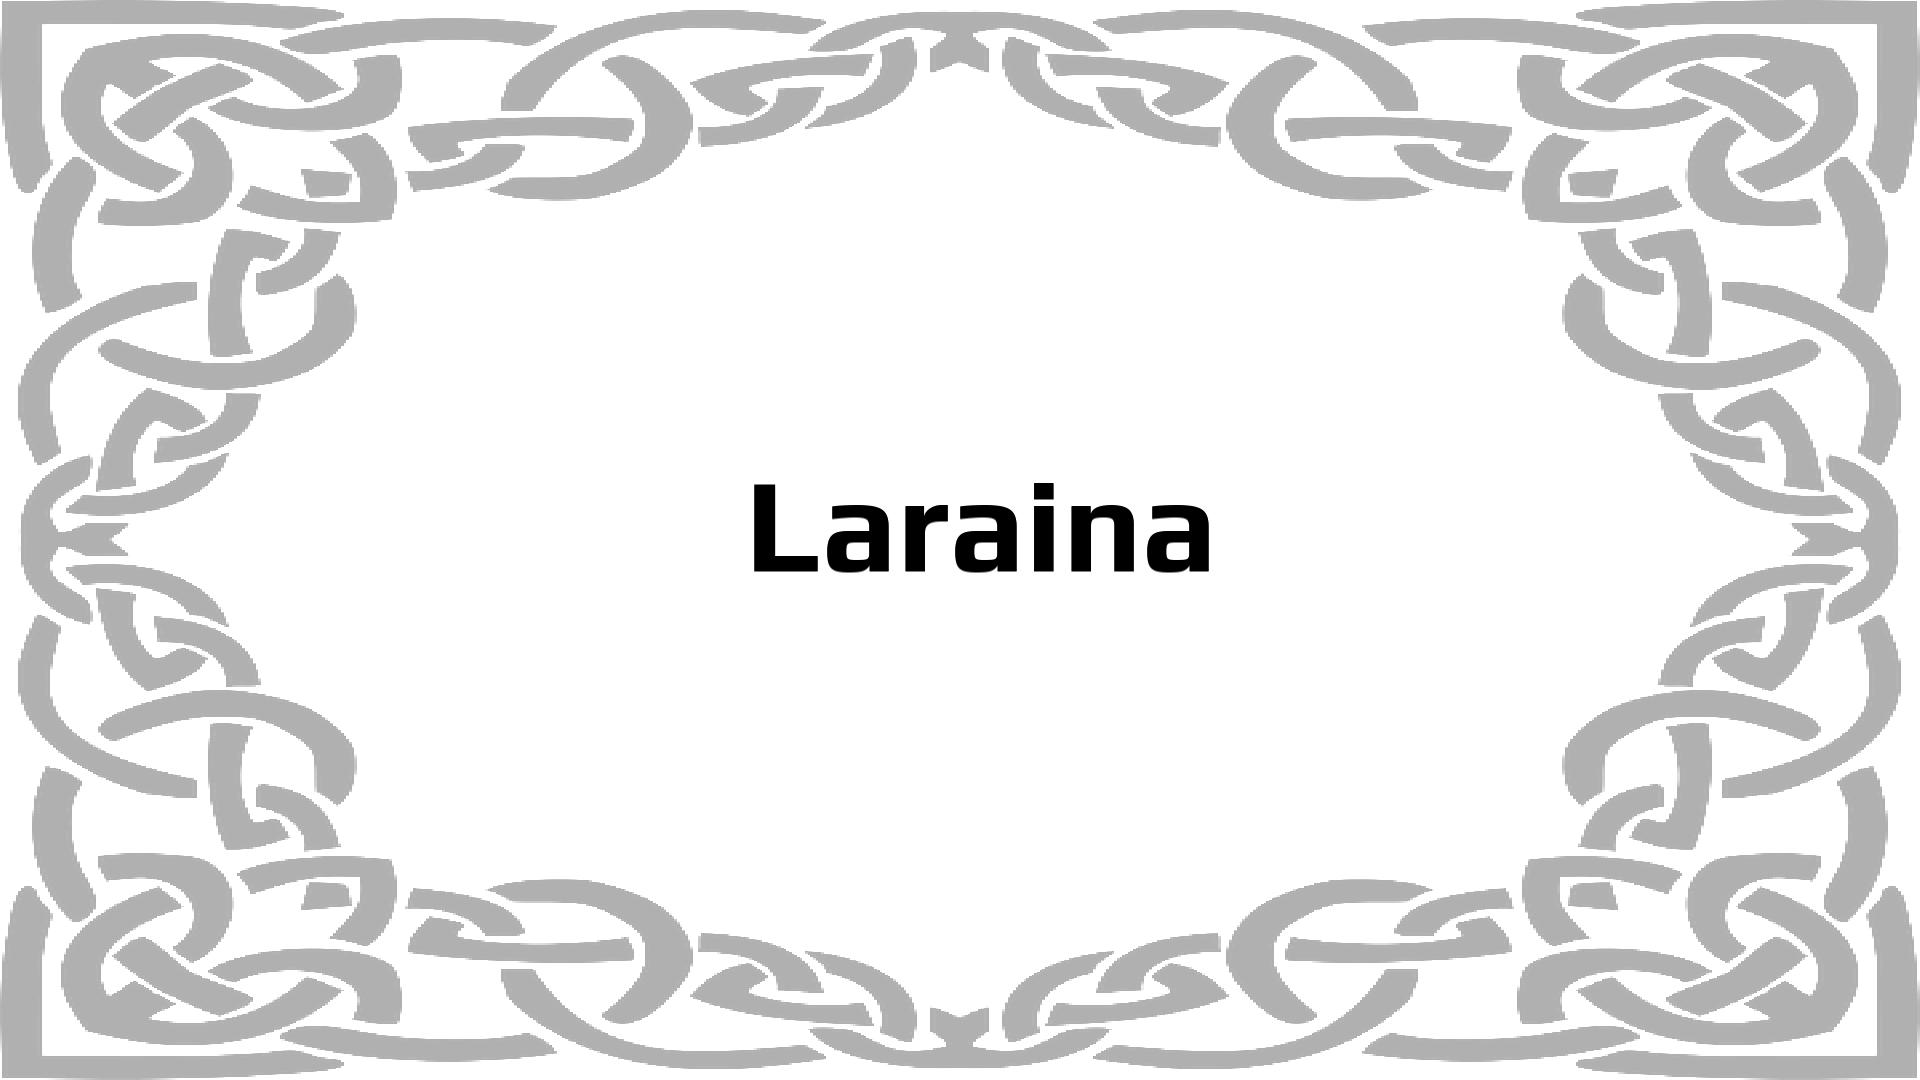 Nombres que significan Lorraine